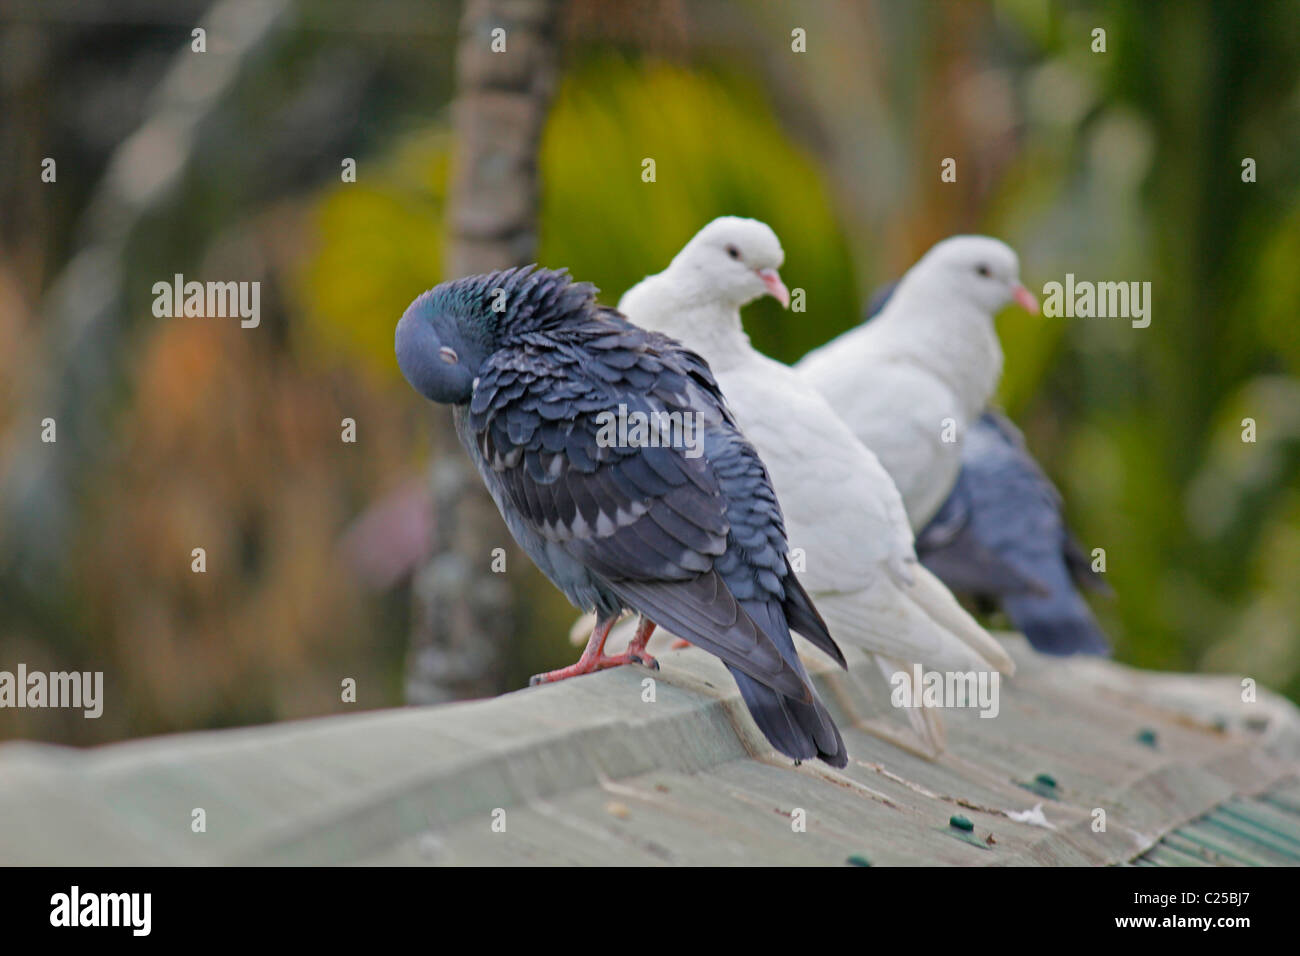 White & Rock colombe, Columba livia, Piccione bianco, India Foto Stock